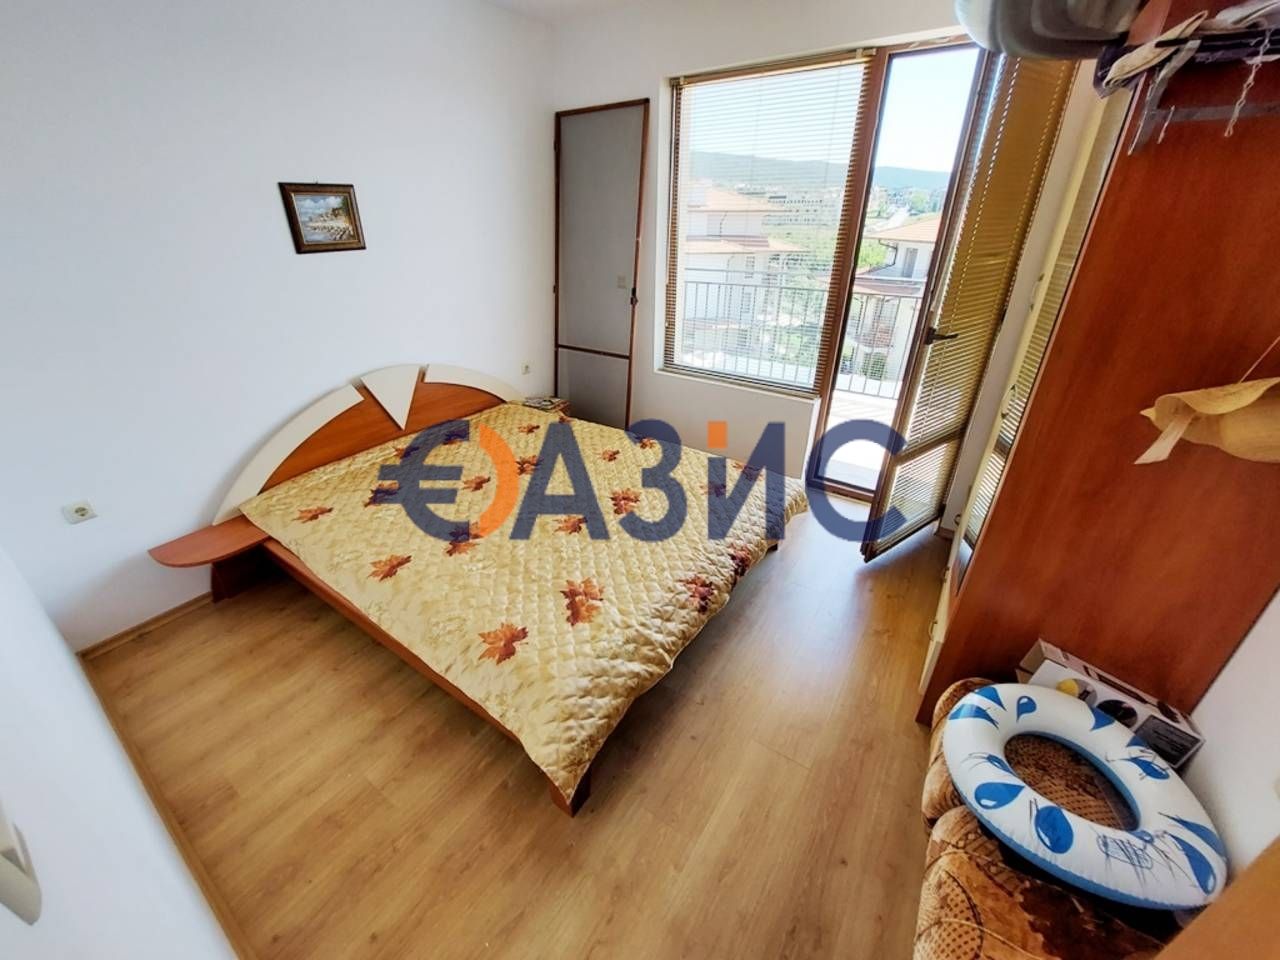 Апартамент с 1 спалня в комплекс" Арките " в Кошарица, България, 54 кв